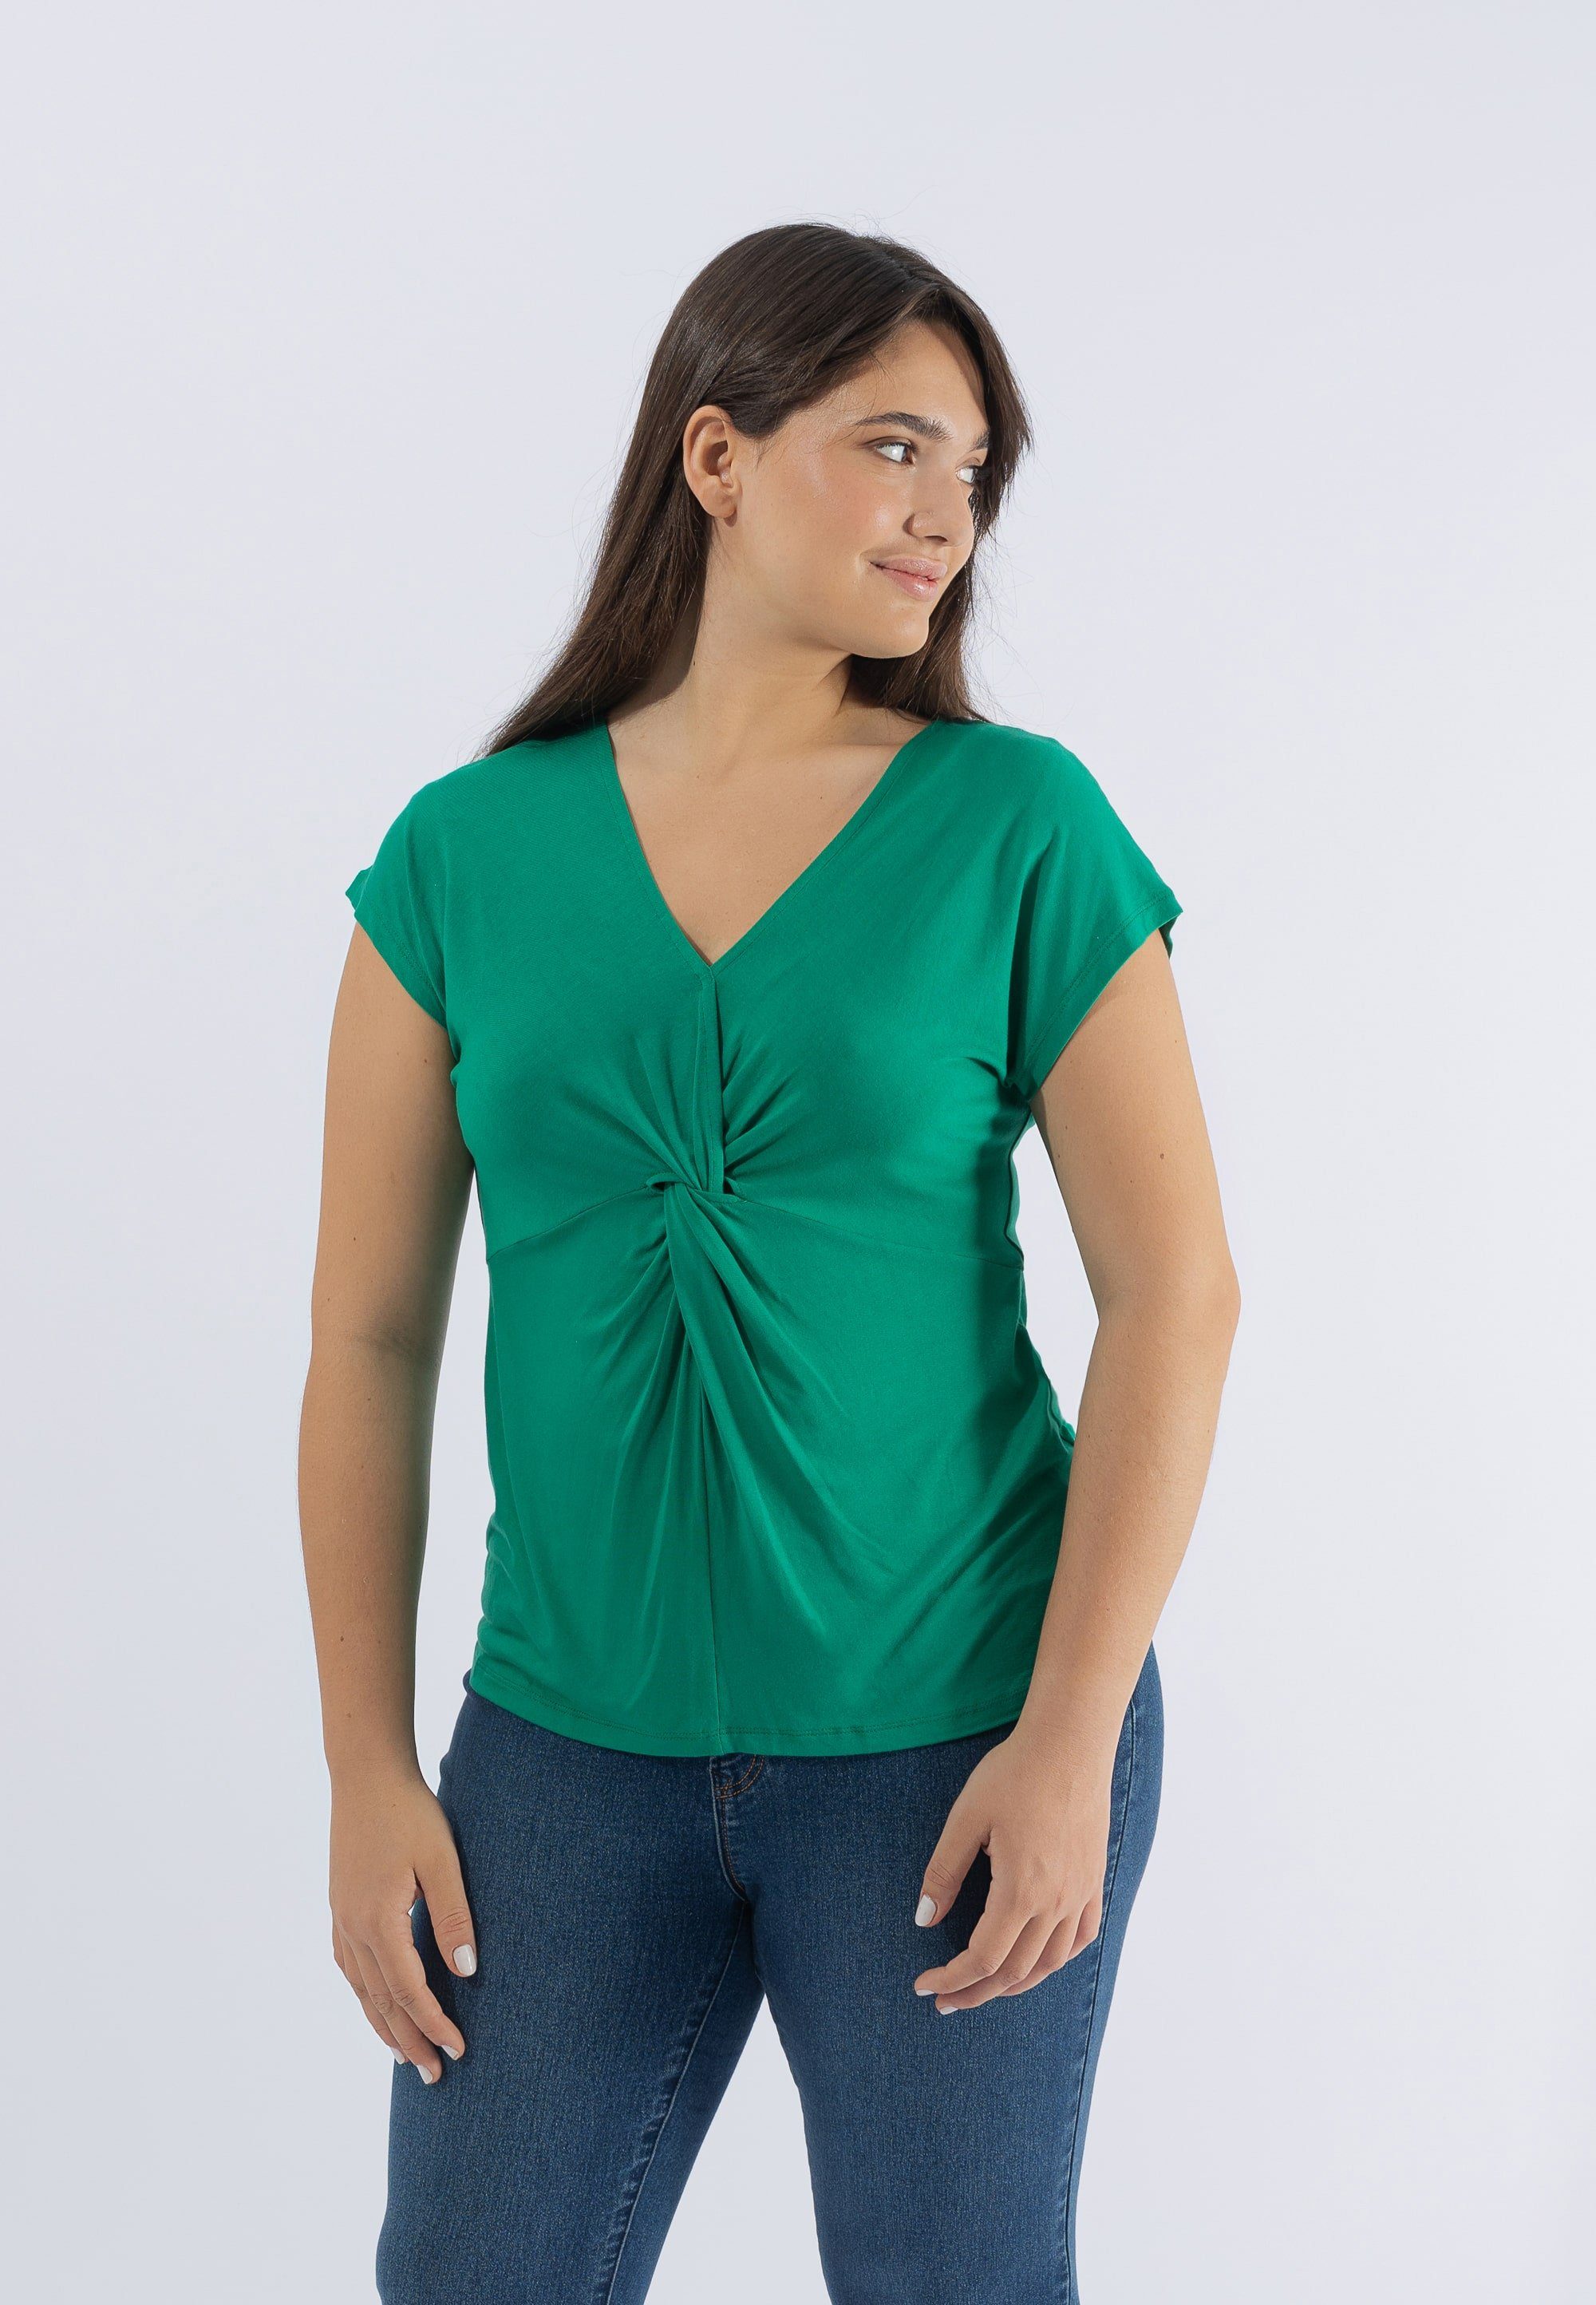 October T-Shirt im tollen grün Knoten-Design